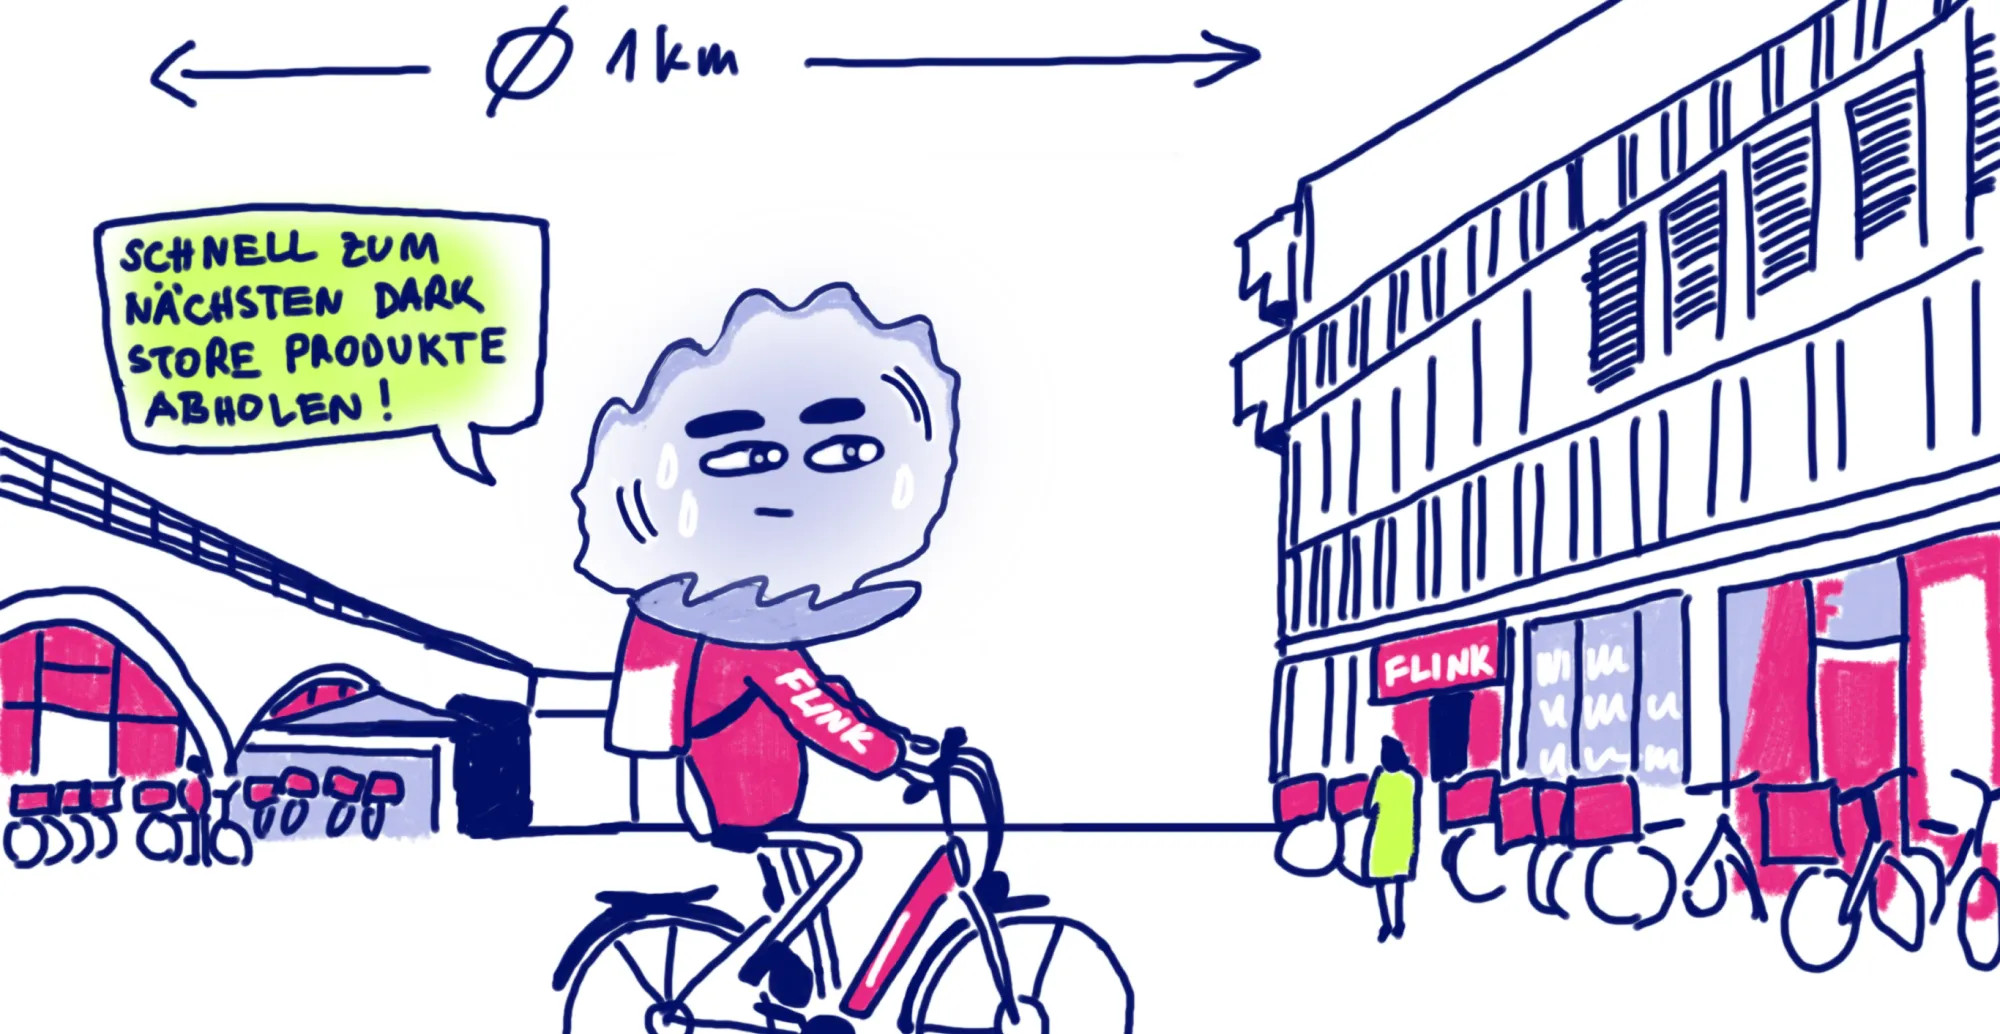 Odi liefert mit FLINK Essen auf einem Fahrrad aus.